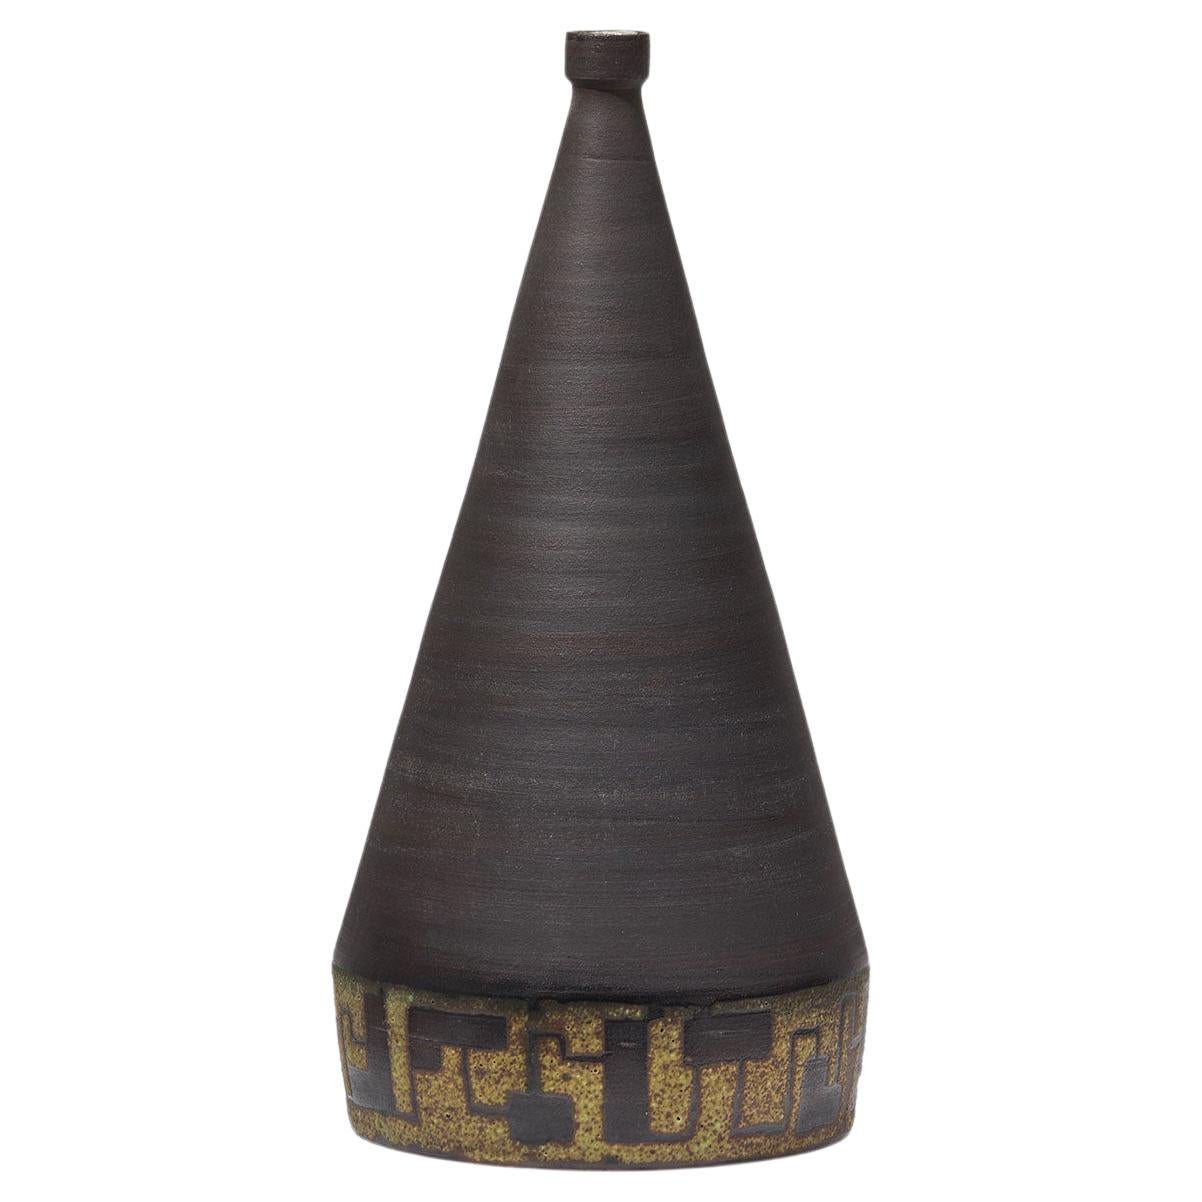 Signierte Keramikvase, 1963, mit schwarzer Glasur